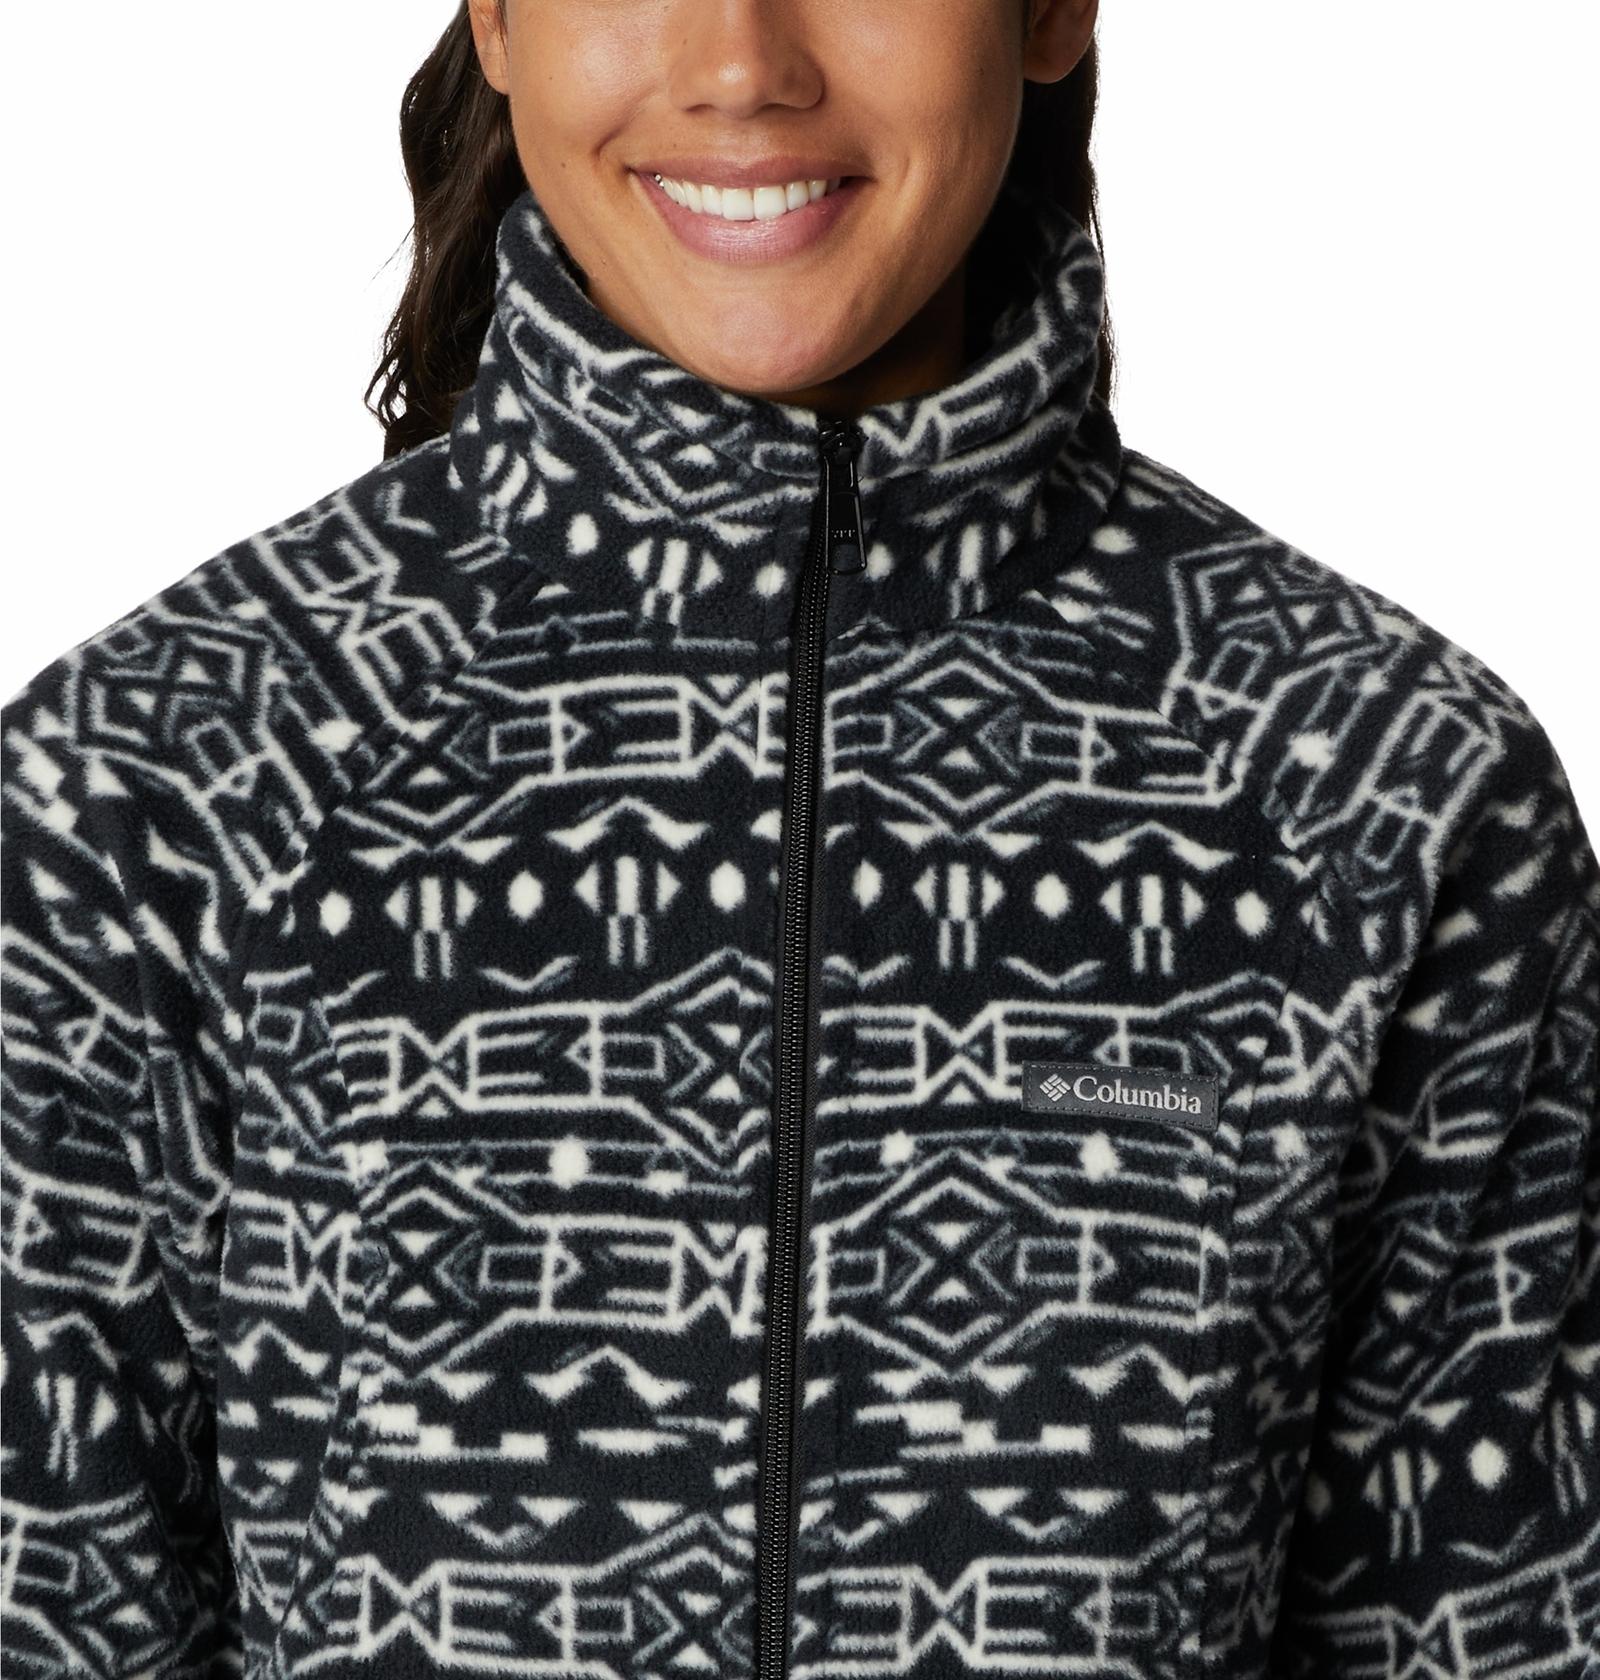 Columbia Women’s Benton Springs Full Zip Fleece Jacket Malbec